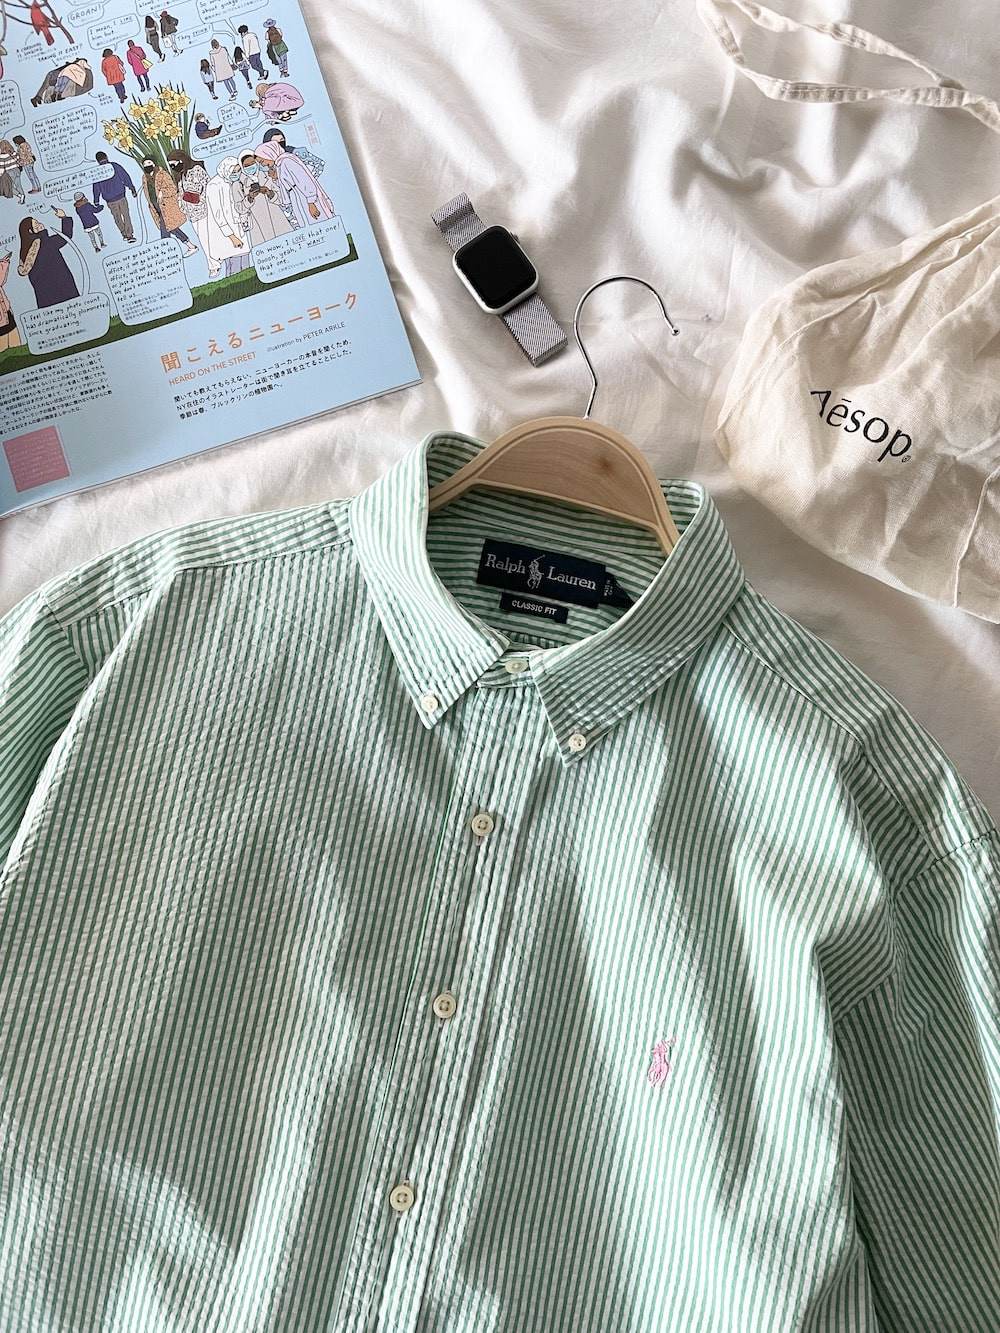 [ XL ] Polo Ralph Lauren Shirt (5466)